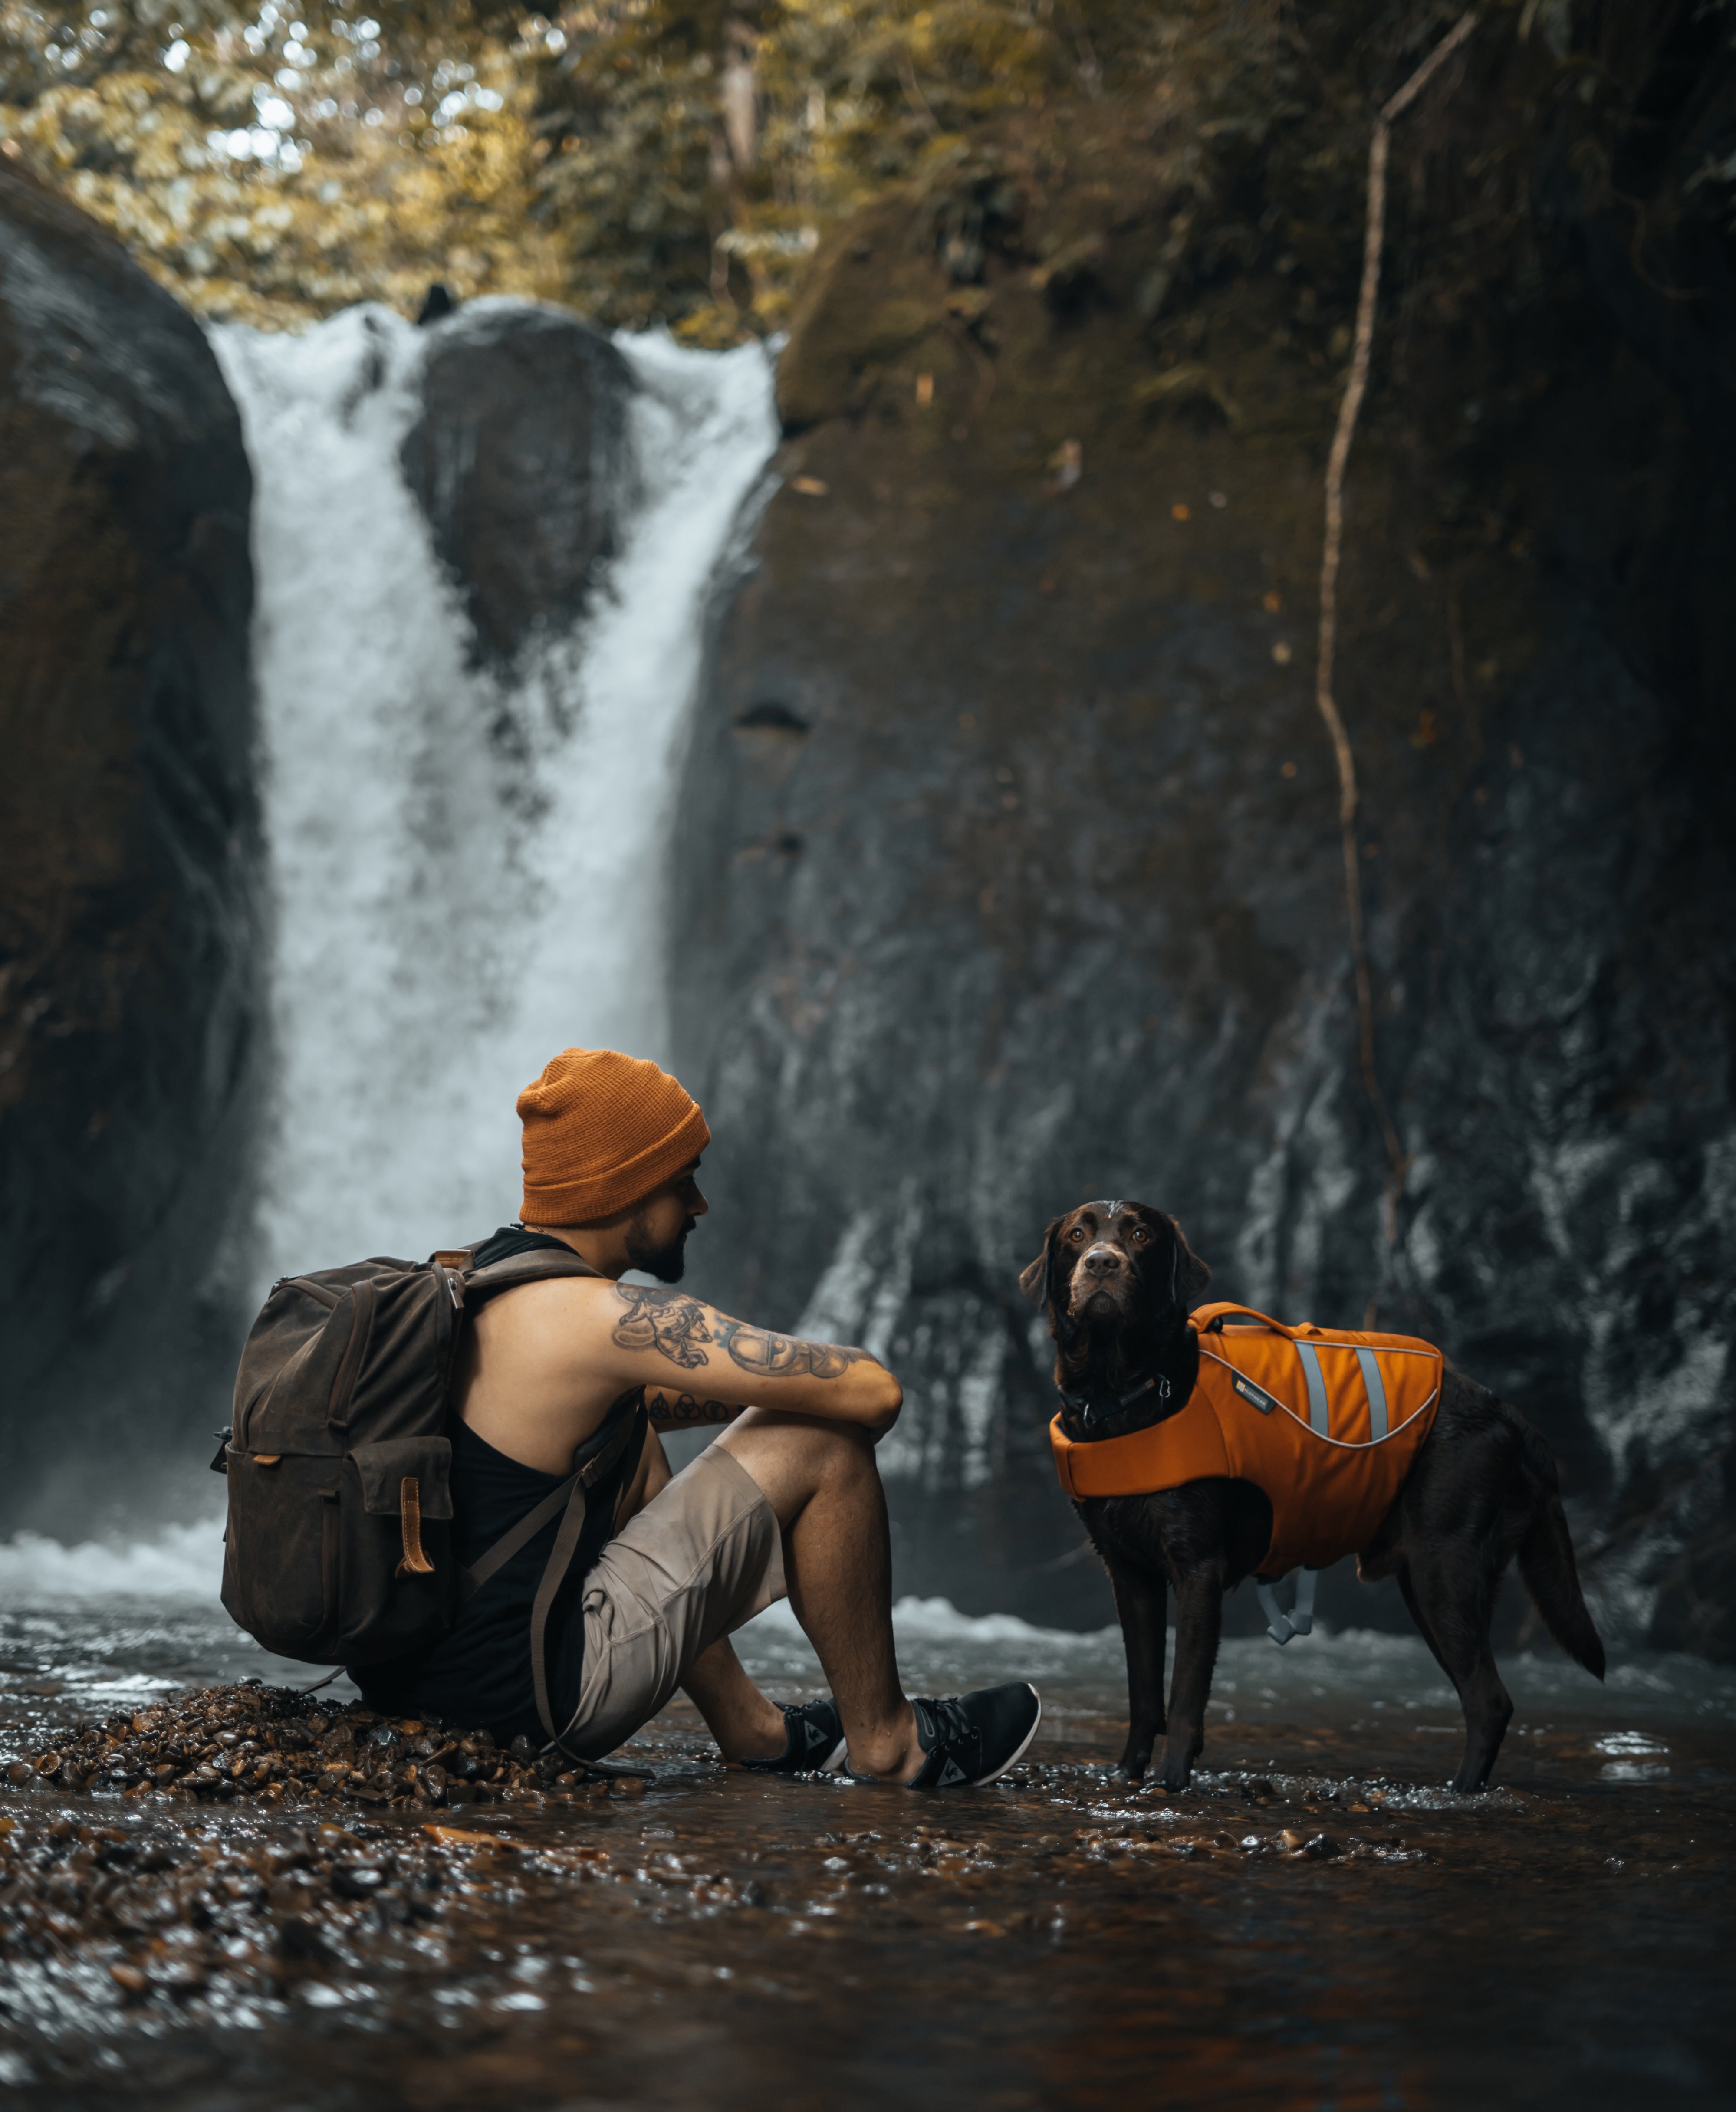 Adrián and Ninja taking in a classic Costa Rica waterfall.